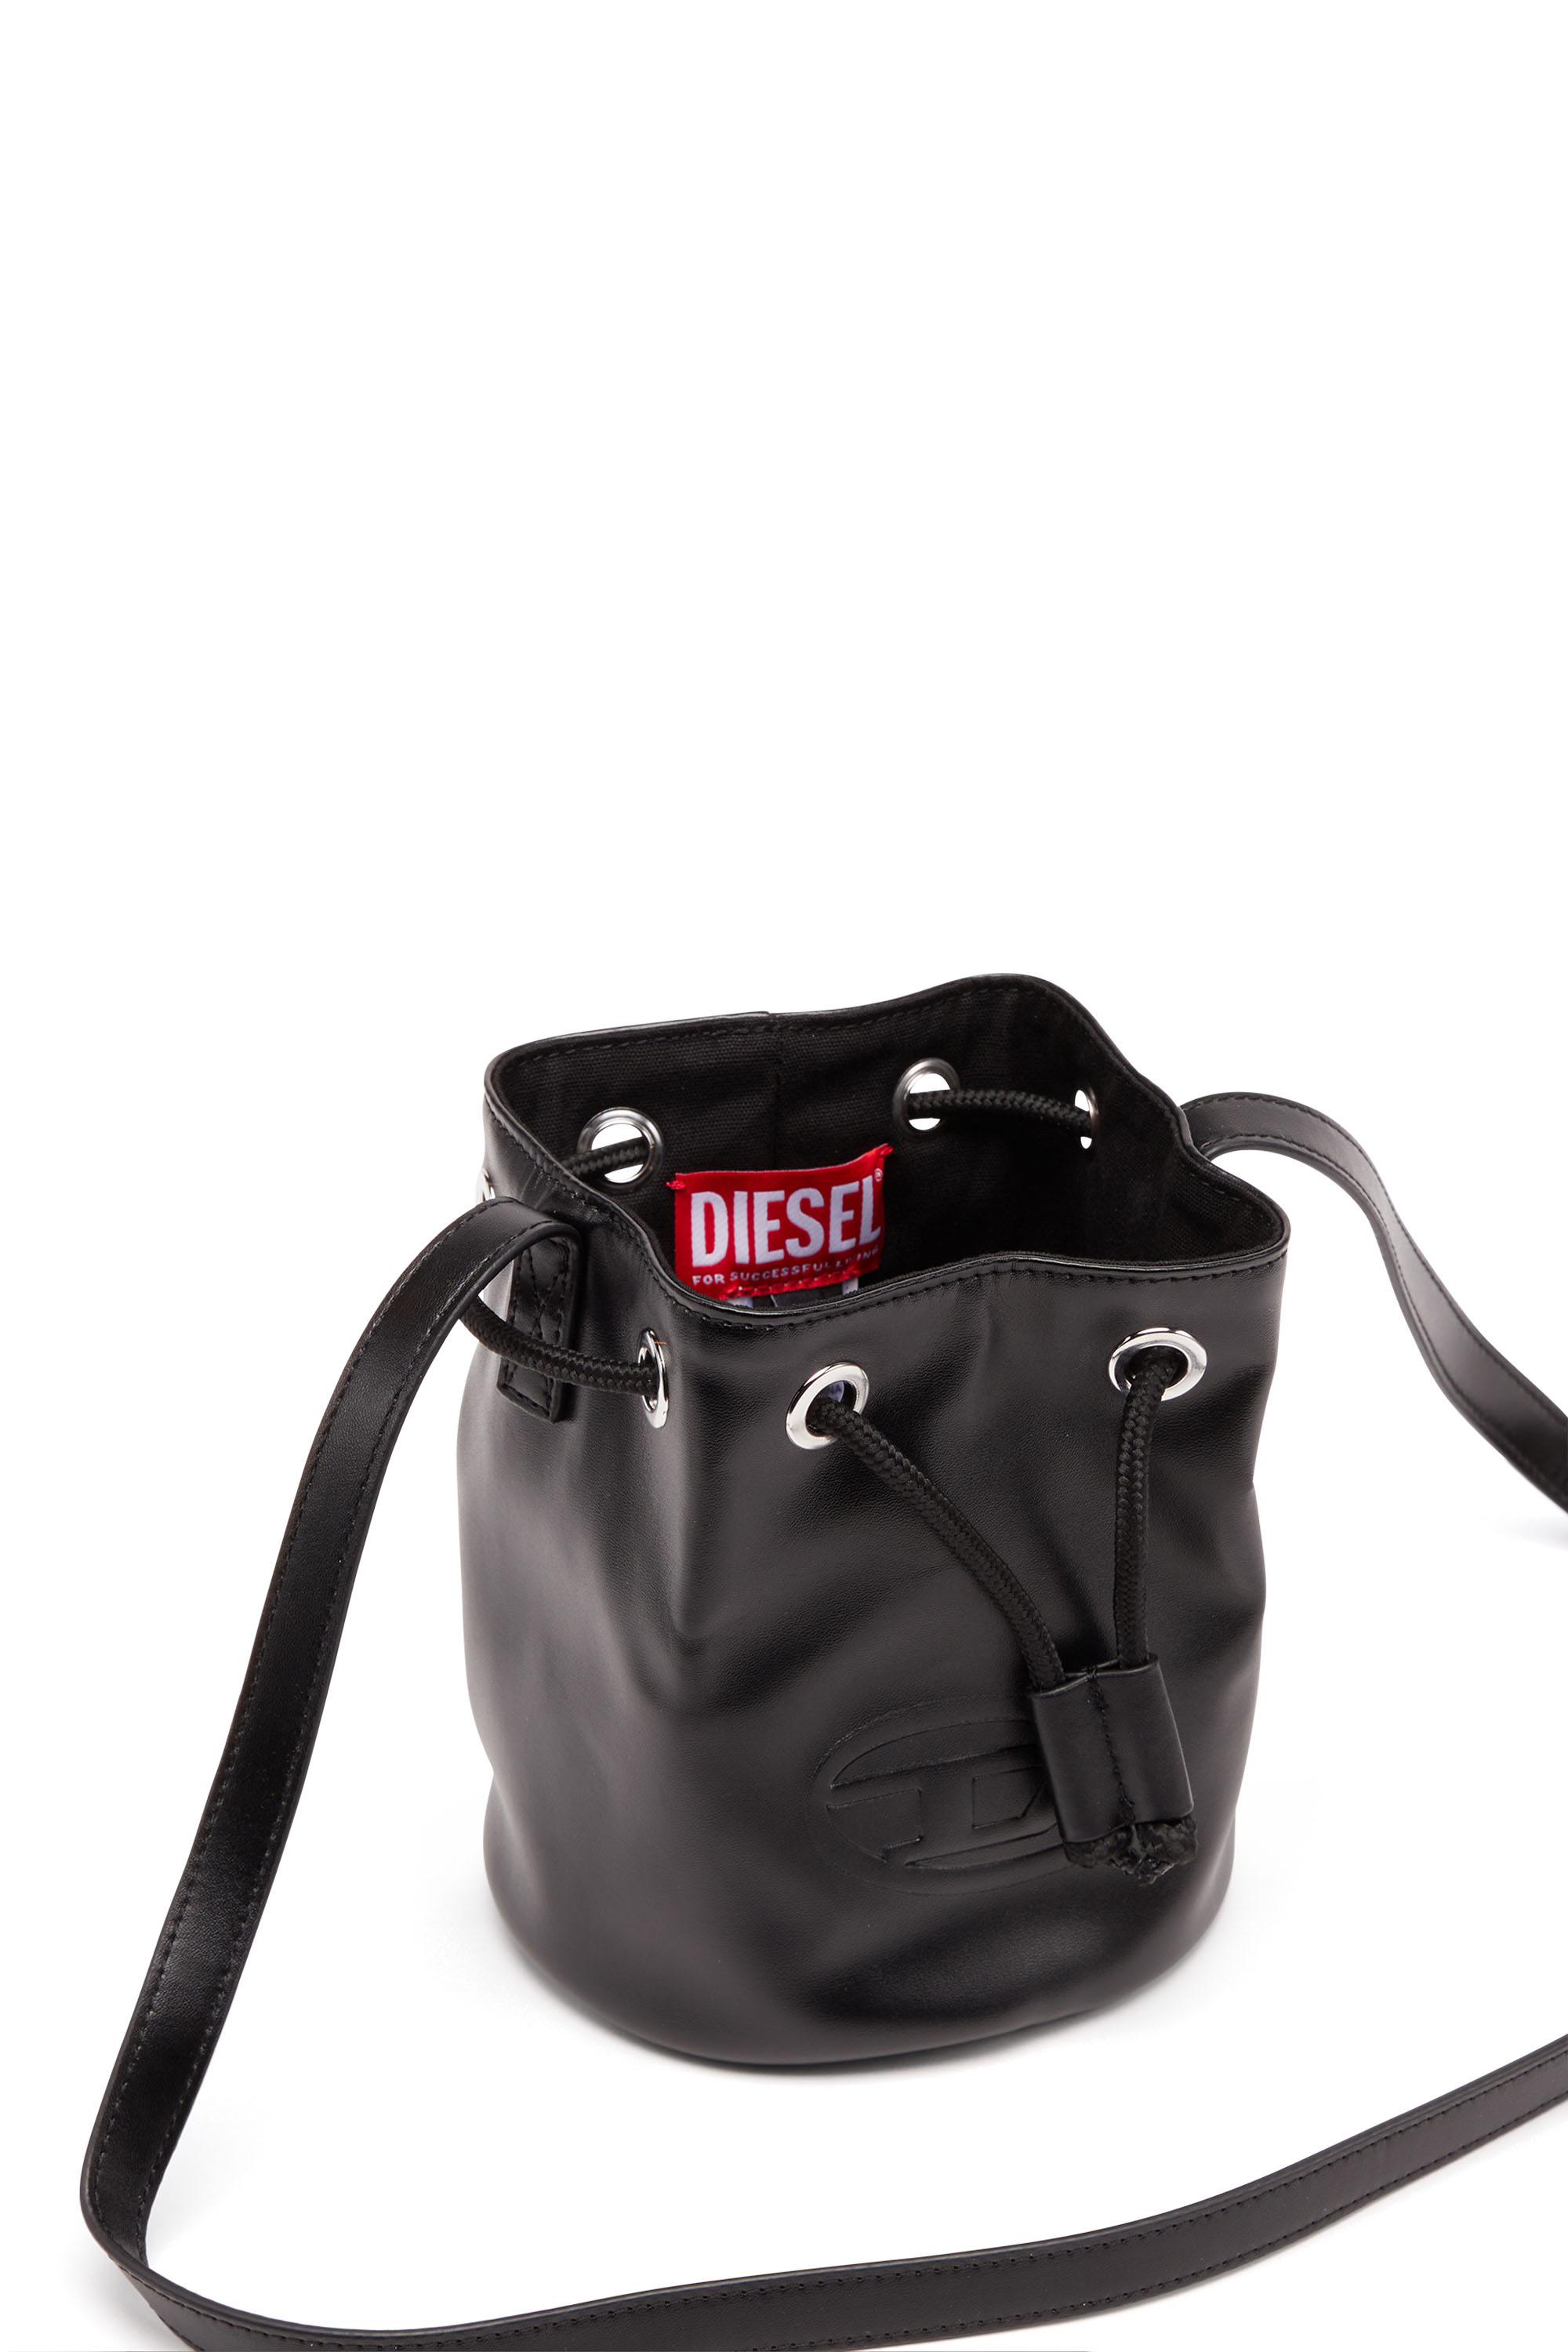 Diesel - WELLTY, Noir - Image 5